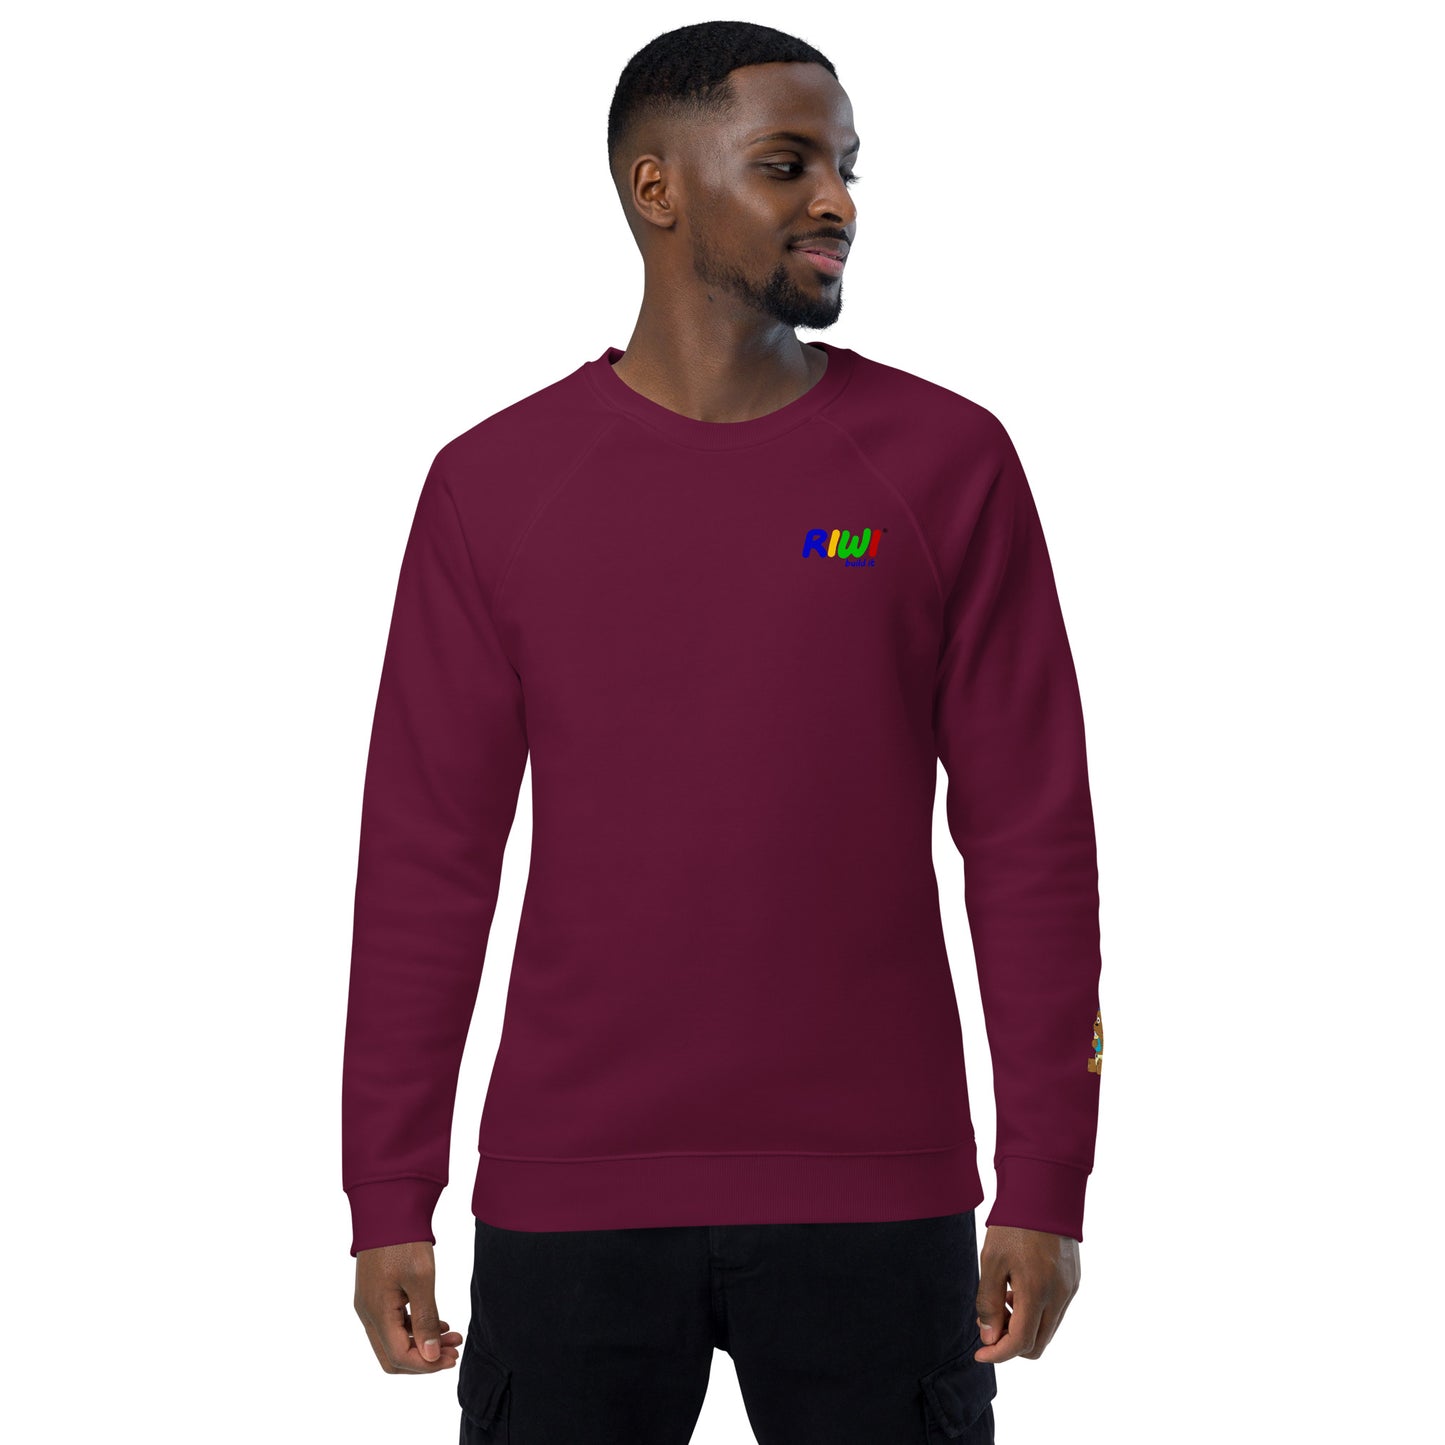 RIWI® unisex organic raglan sweater for adults